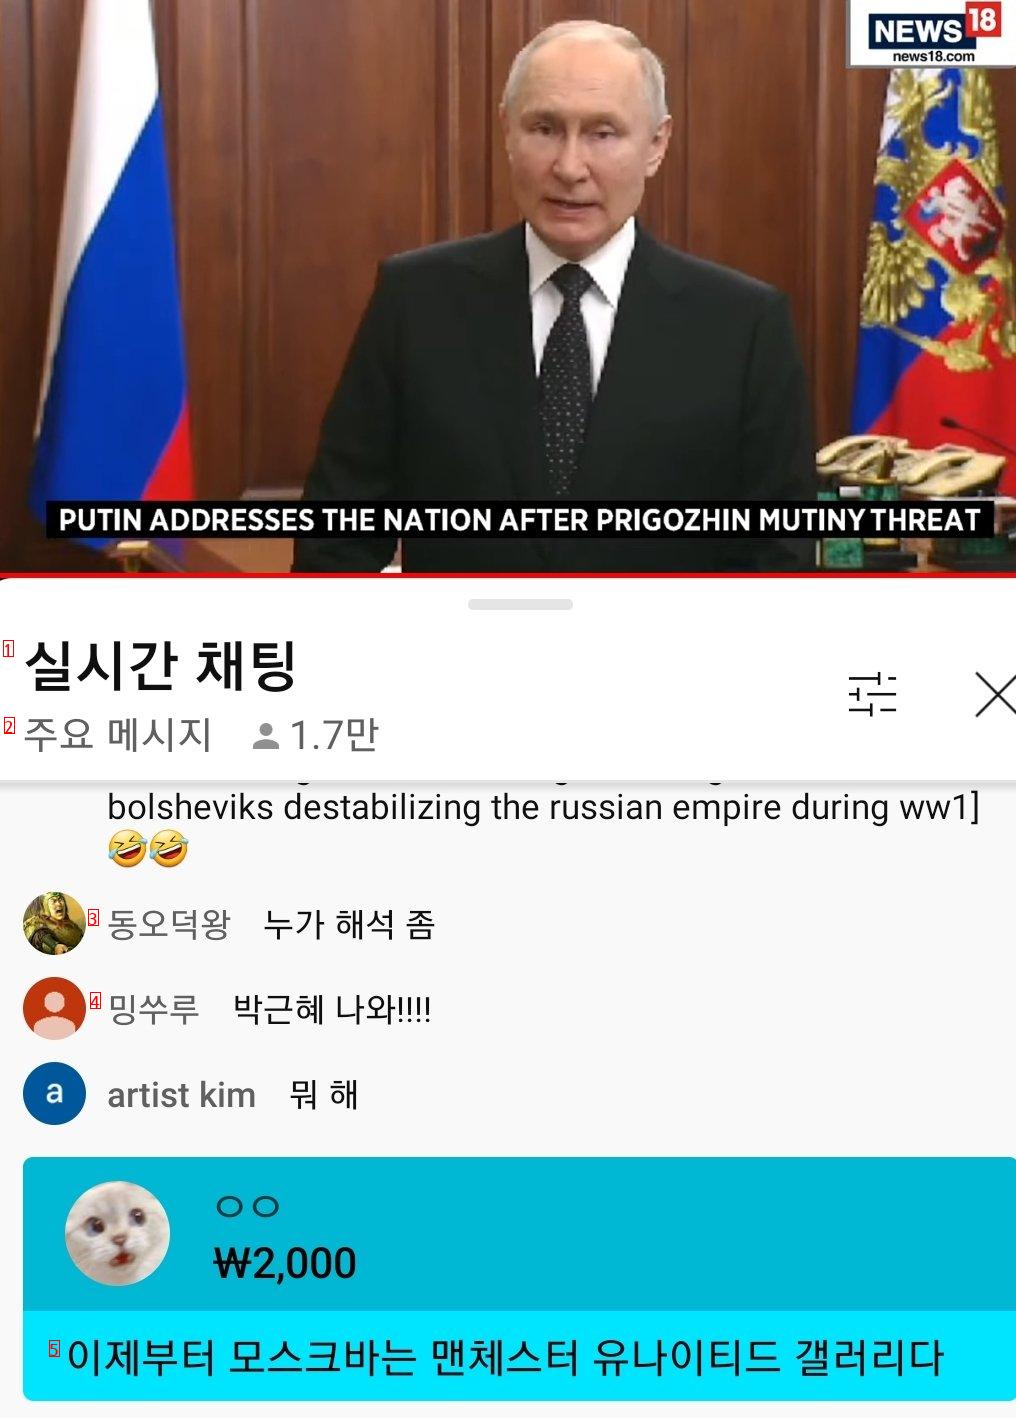 プーチン大統領のリアルタイム演説コメントの近況